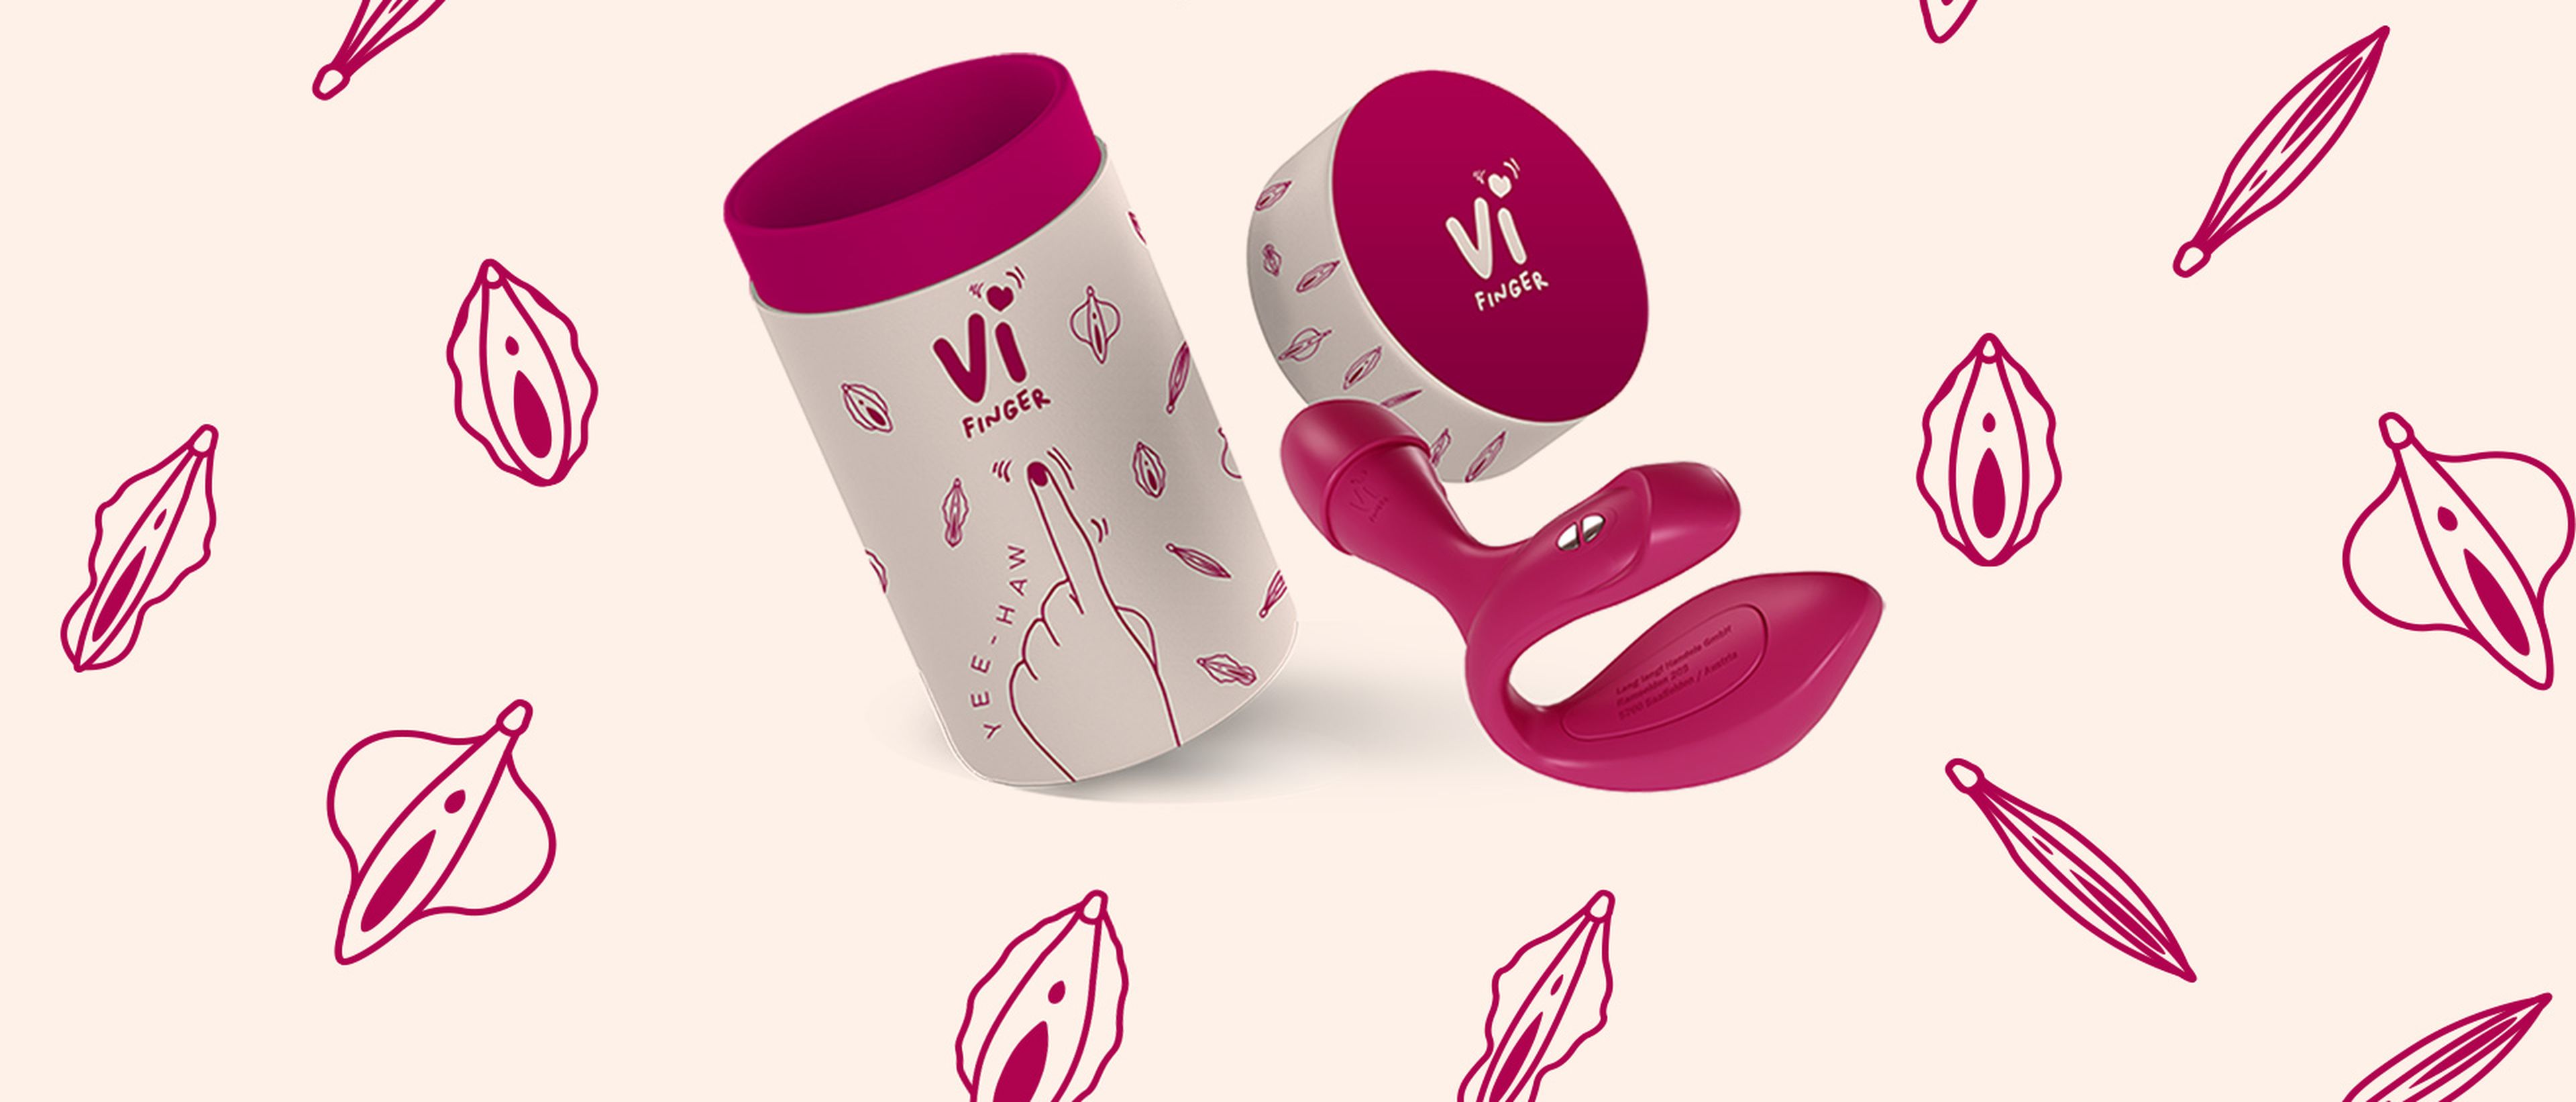 ViFinger Fingervibrator mit Verpackung und verschiedenen Skizzen von Vulven im Hintergrund